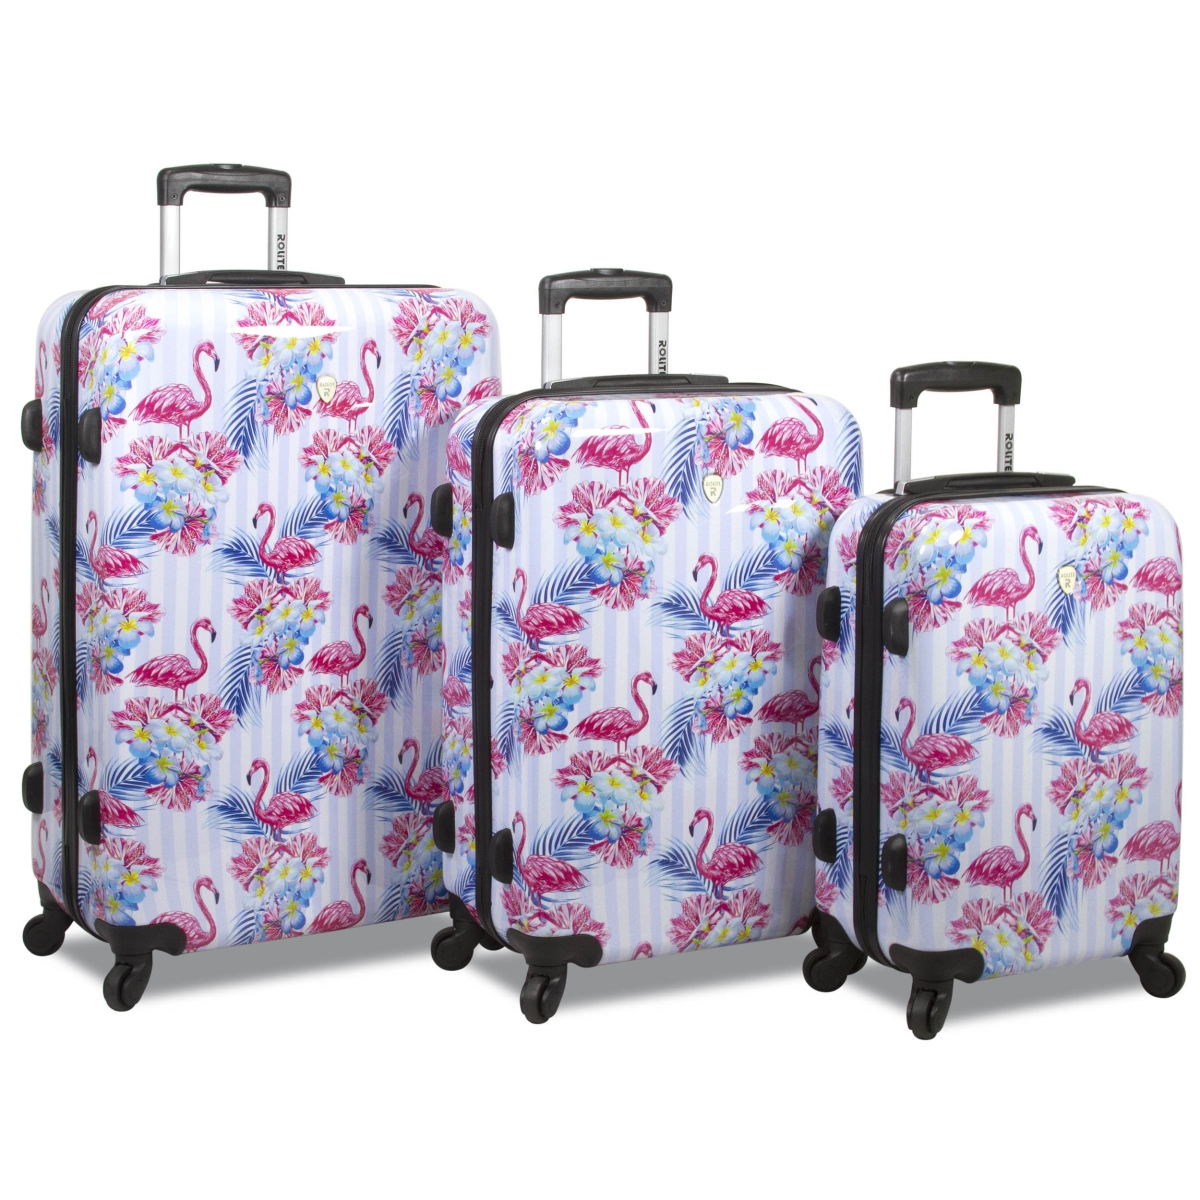 Wt-216-flamingo Flamingo Hardside Spinner Combination Lock Luggage Set - 3 Piece